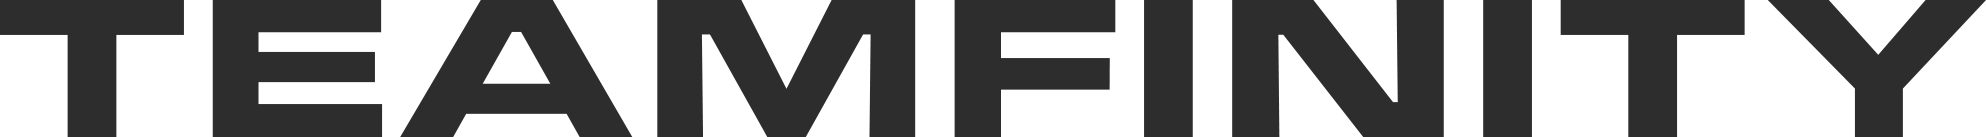 Teamfinity_Grey_logo